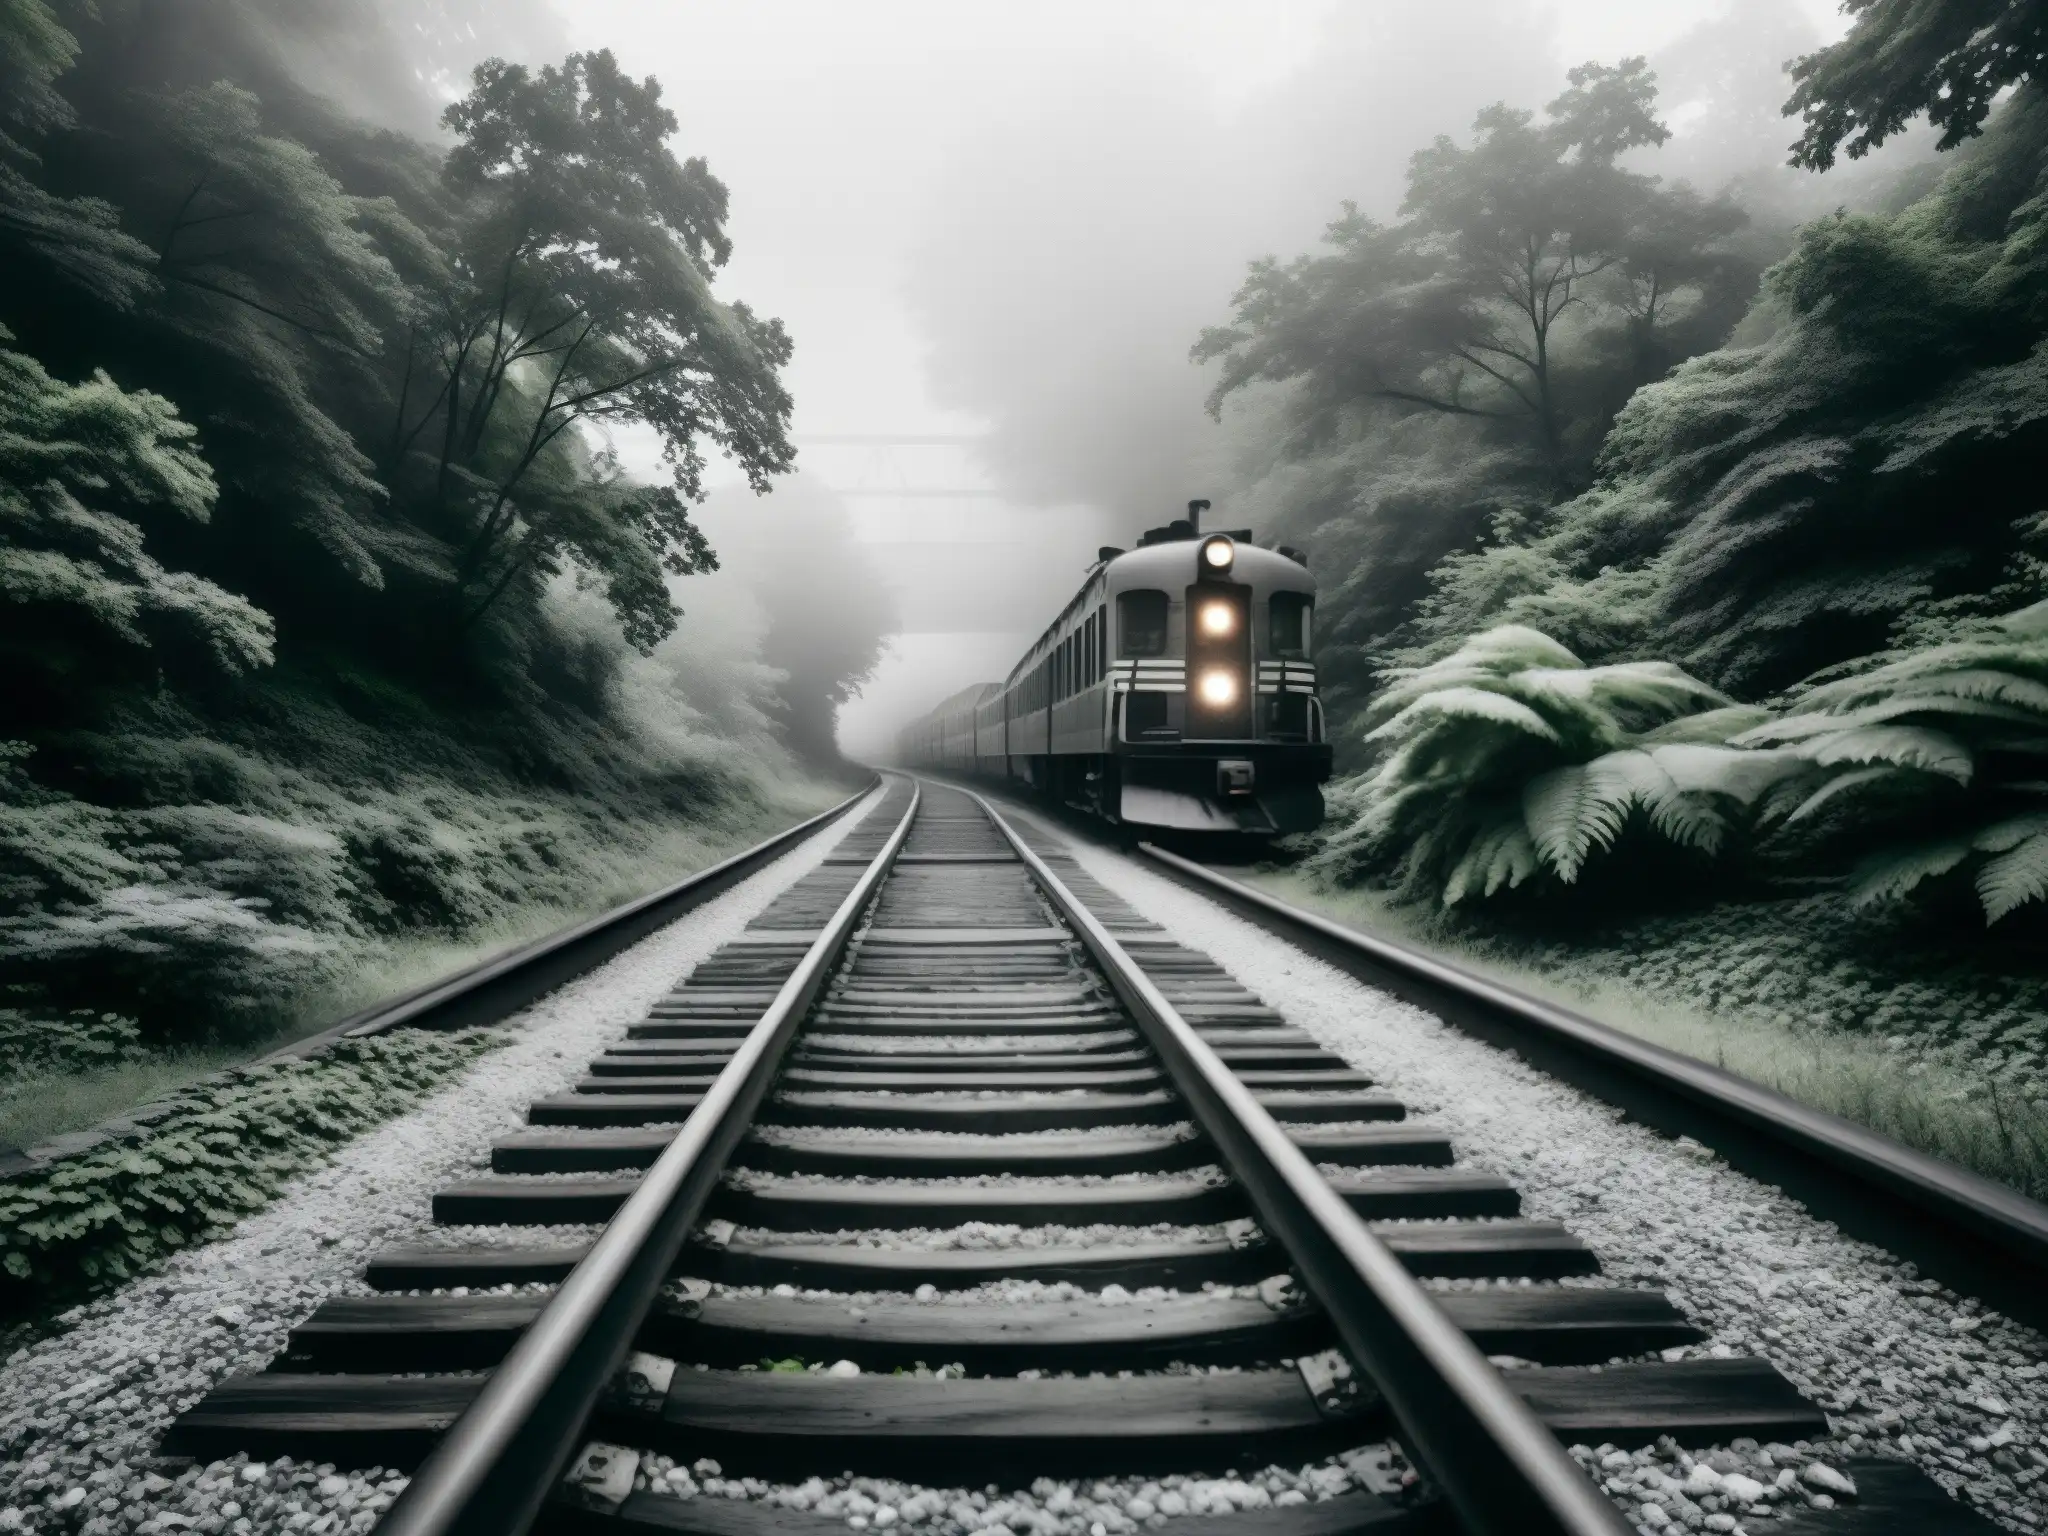 Un paisaje inquietante de vías de tren abandonadas entre un denso bosque, evocando la historia del tren fantasma St